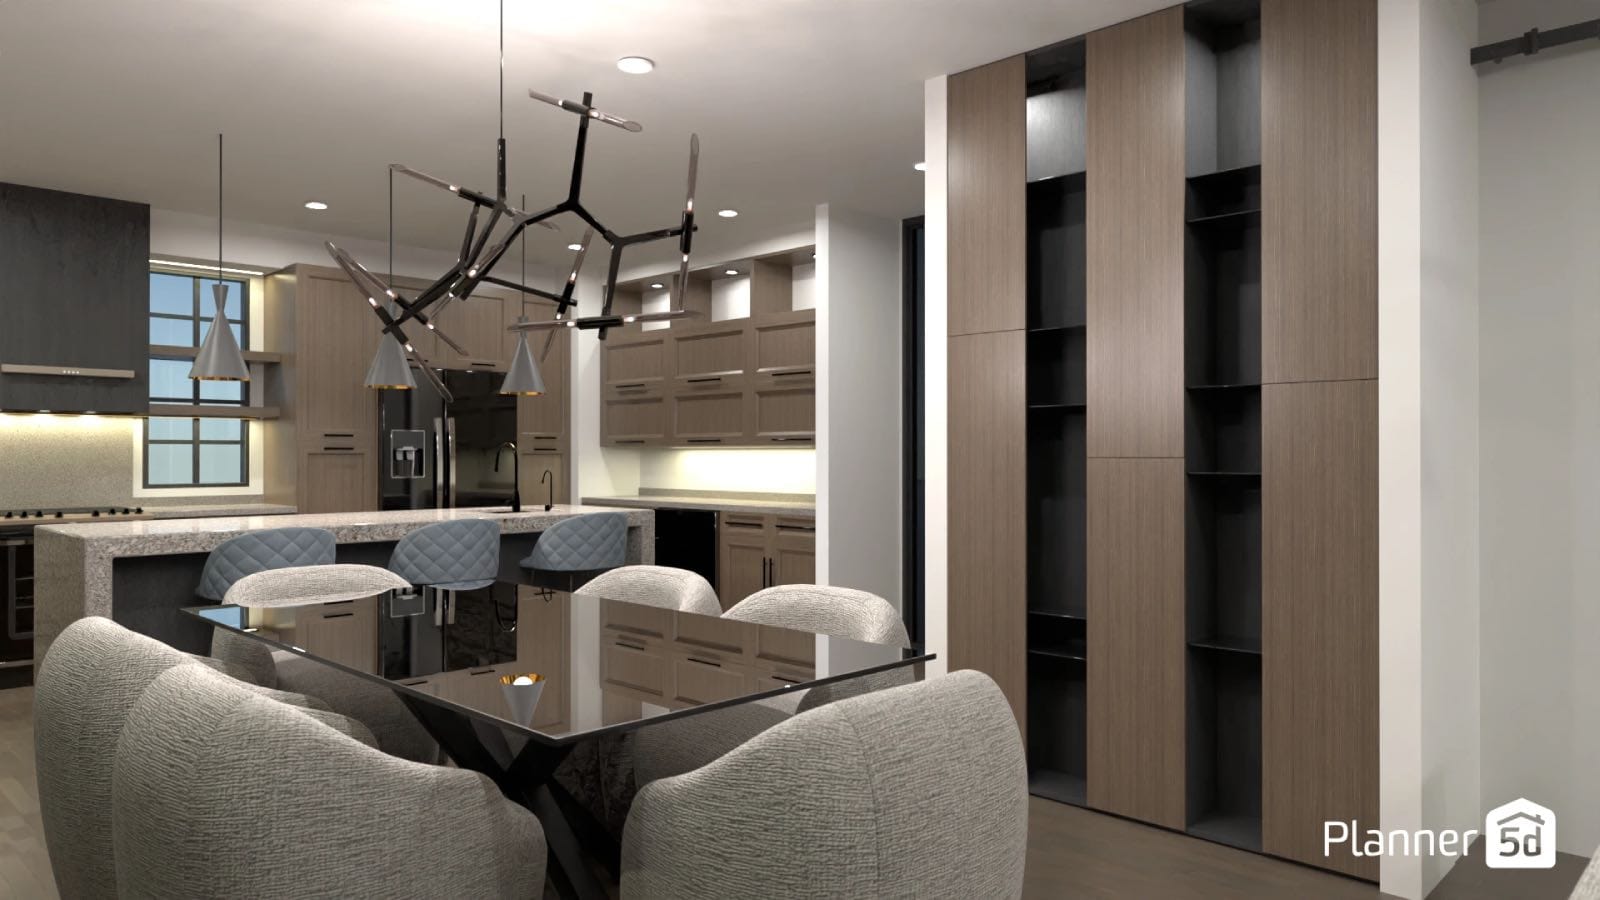 cocina-comedor de diseño moderno con muebles de madera, render 3D planner 5D